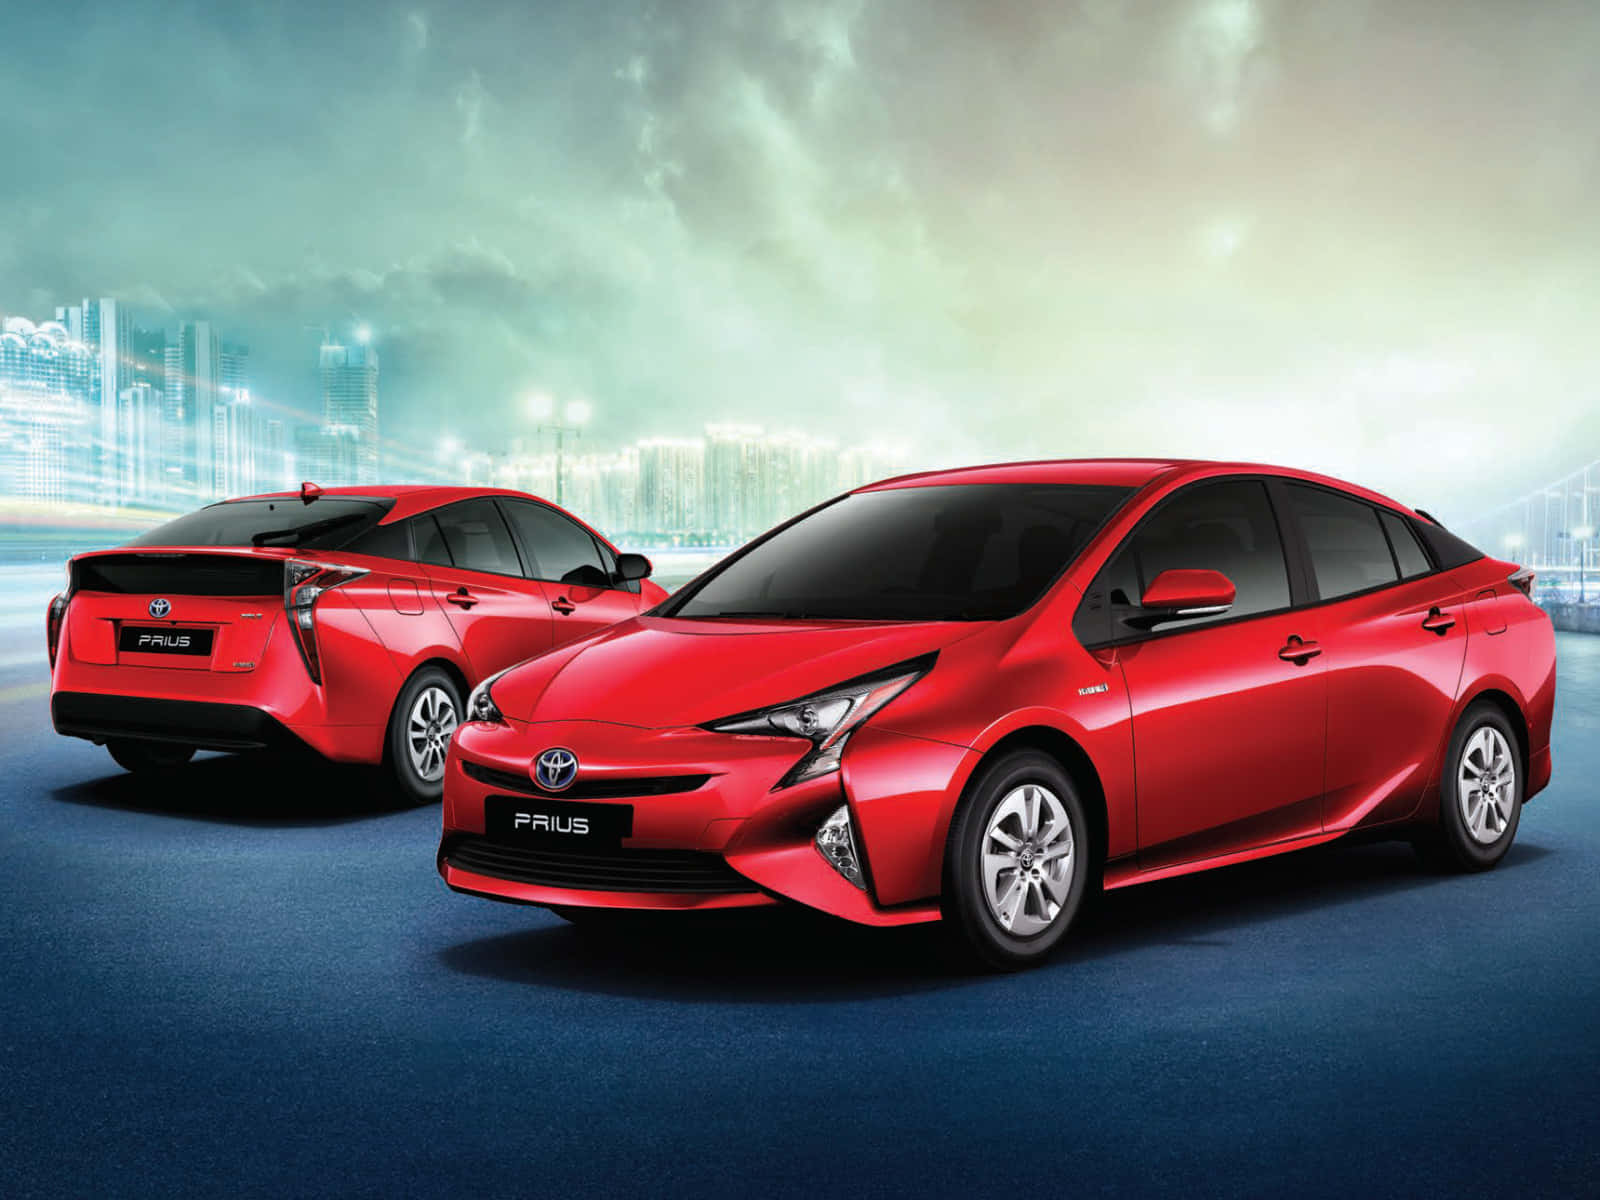 Toyotabeweist Innovation Und Leistung.